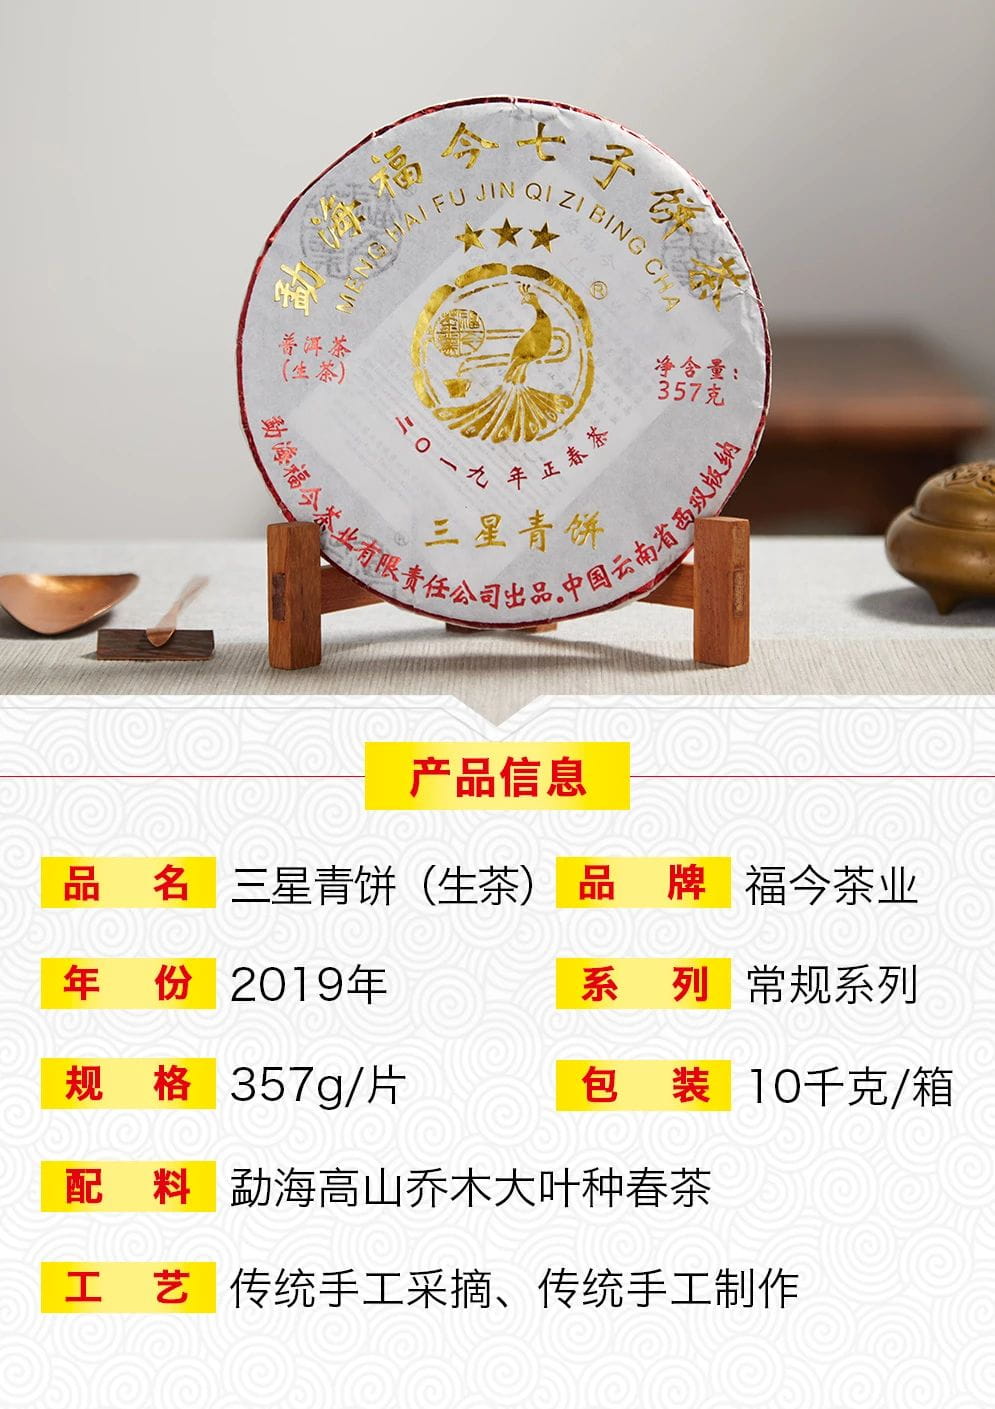 立秋新品 | 福今2019年三星青饼正式发售！